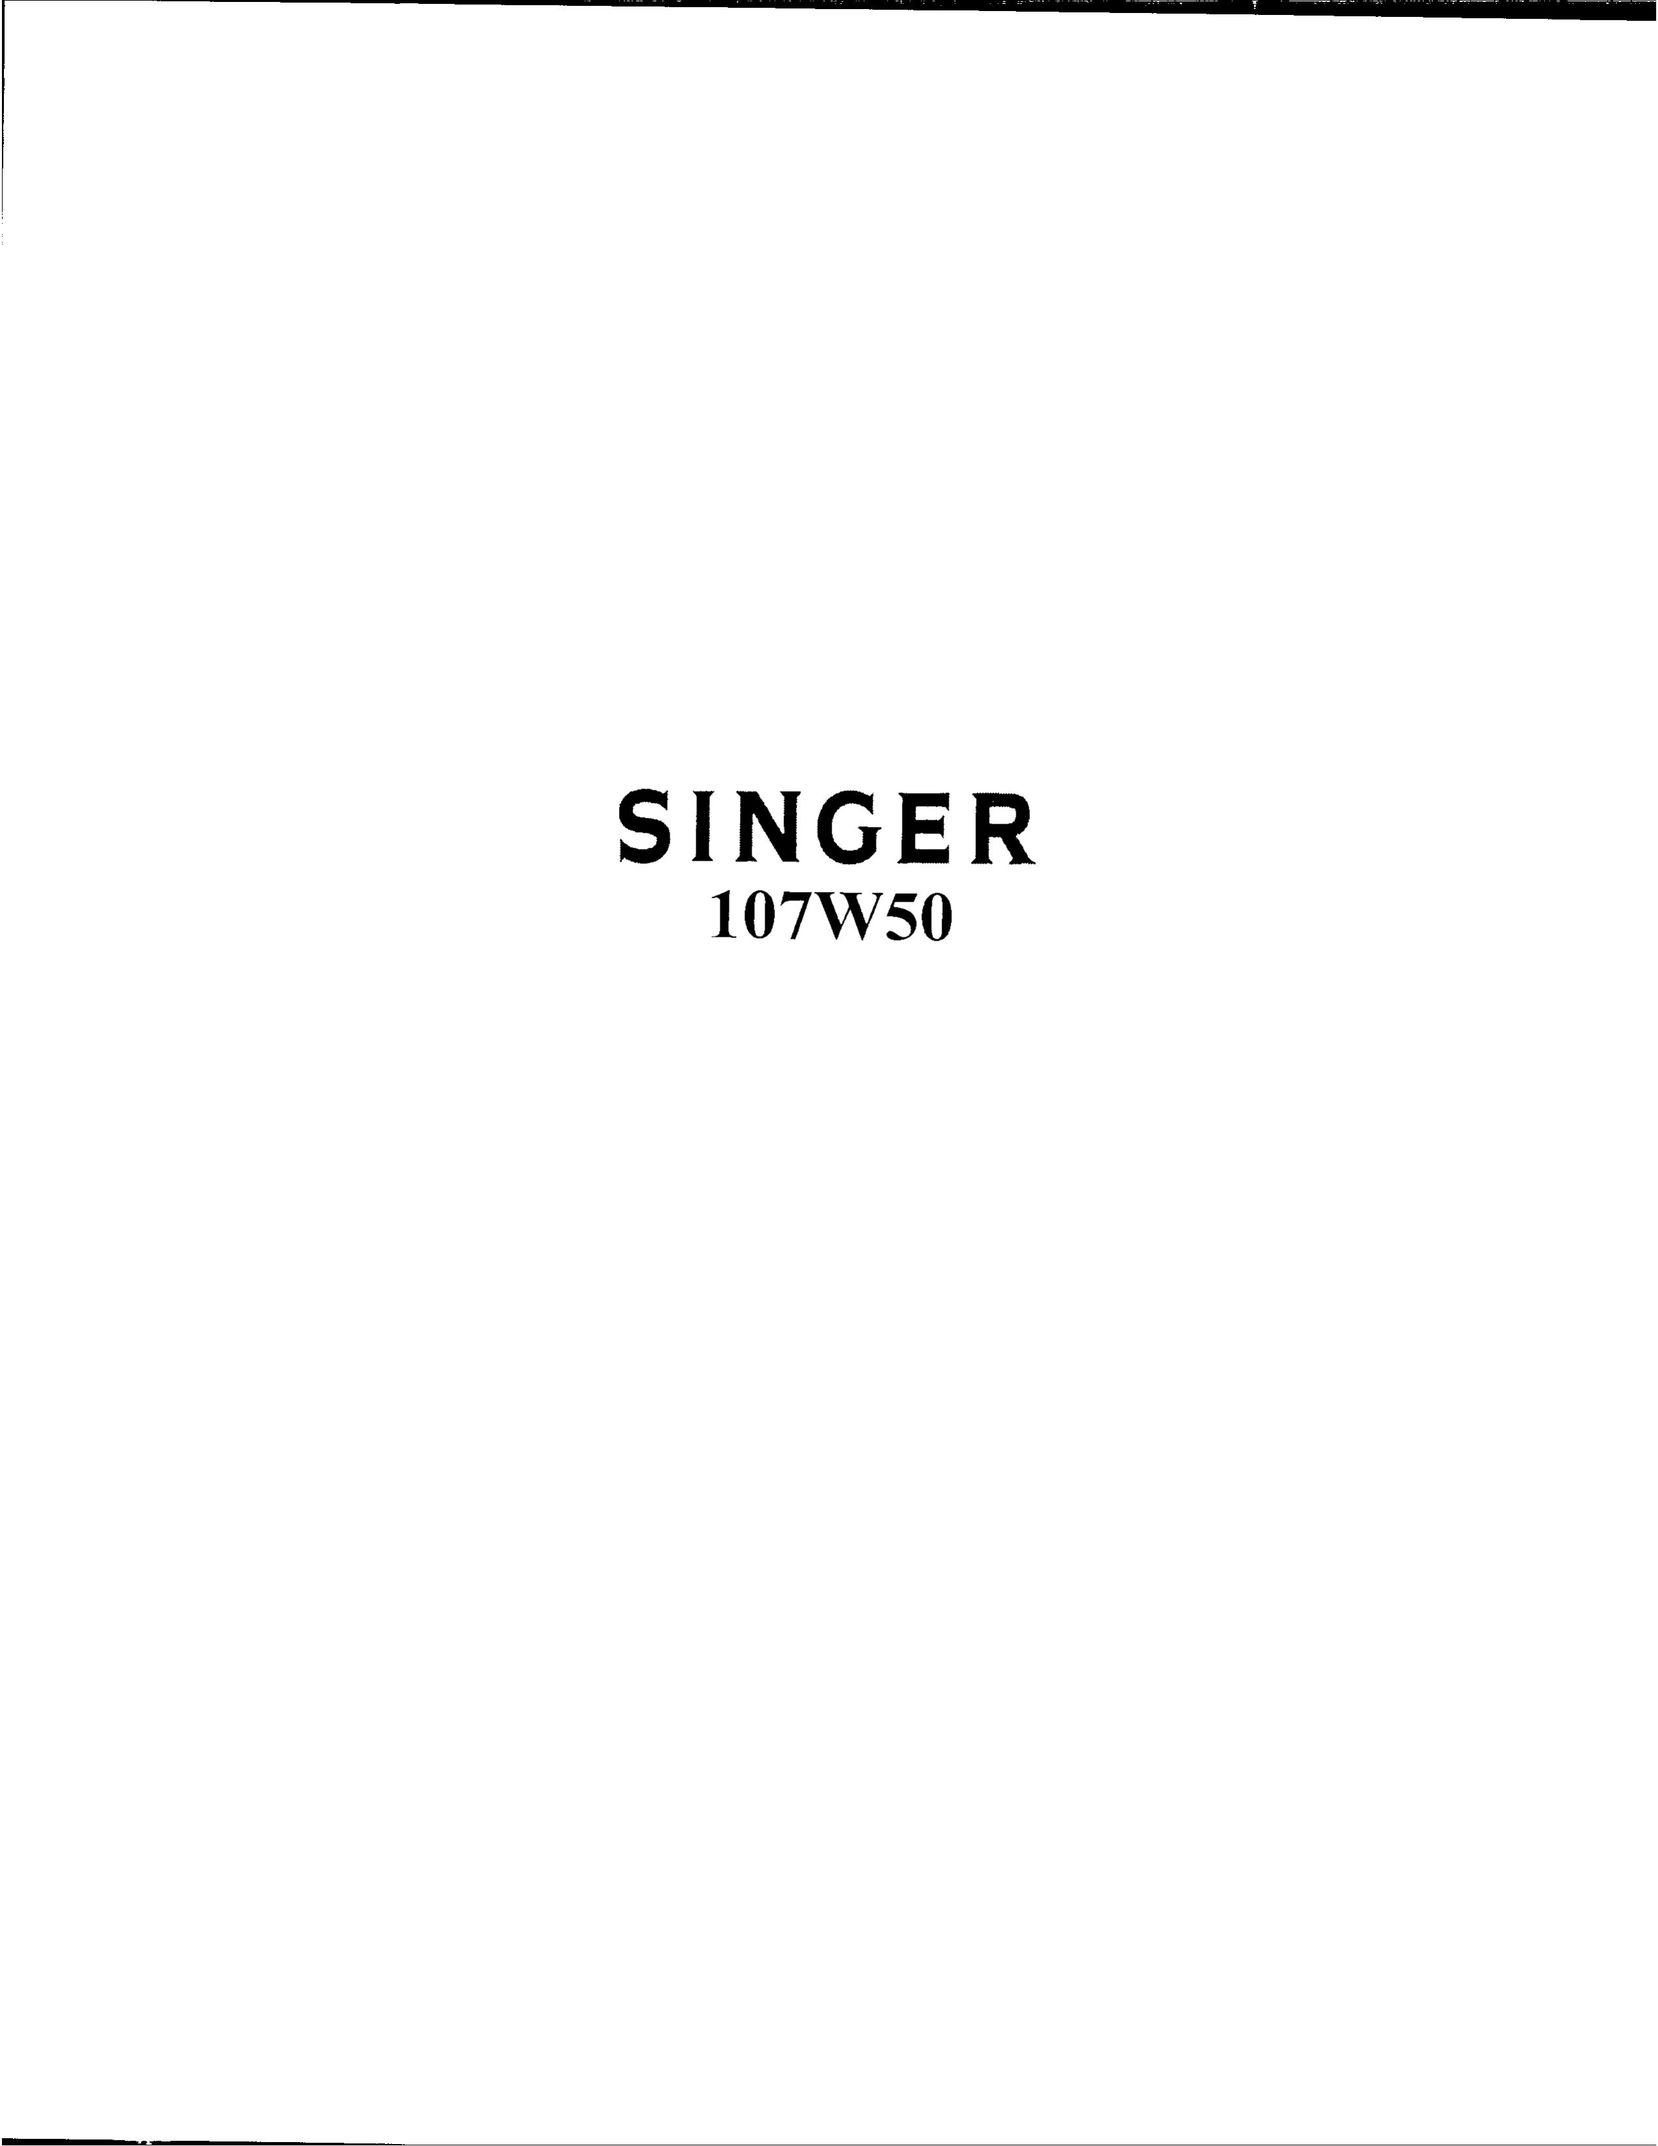 Singer 107W50 Sewing Machine User Manual